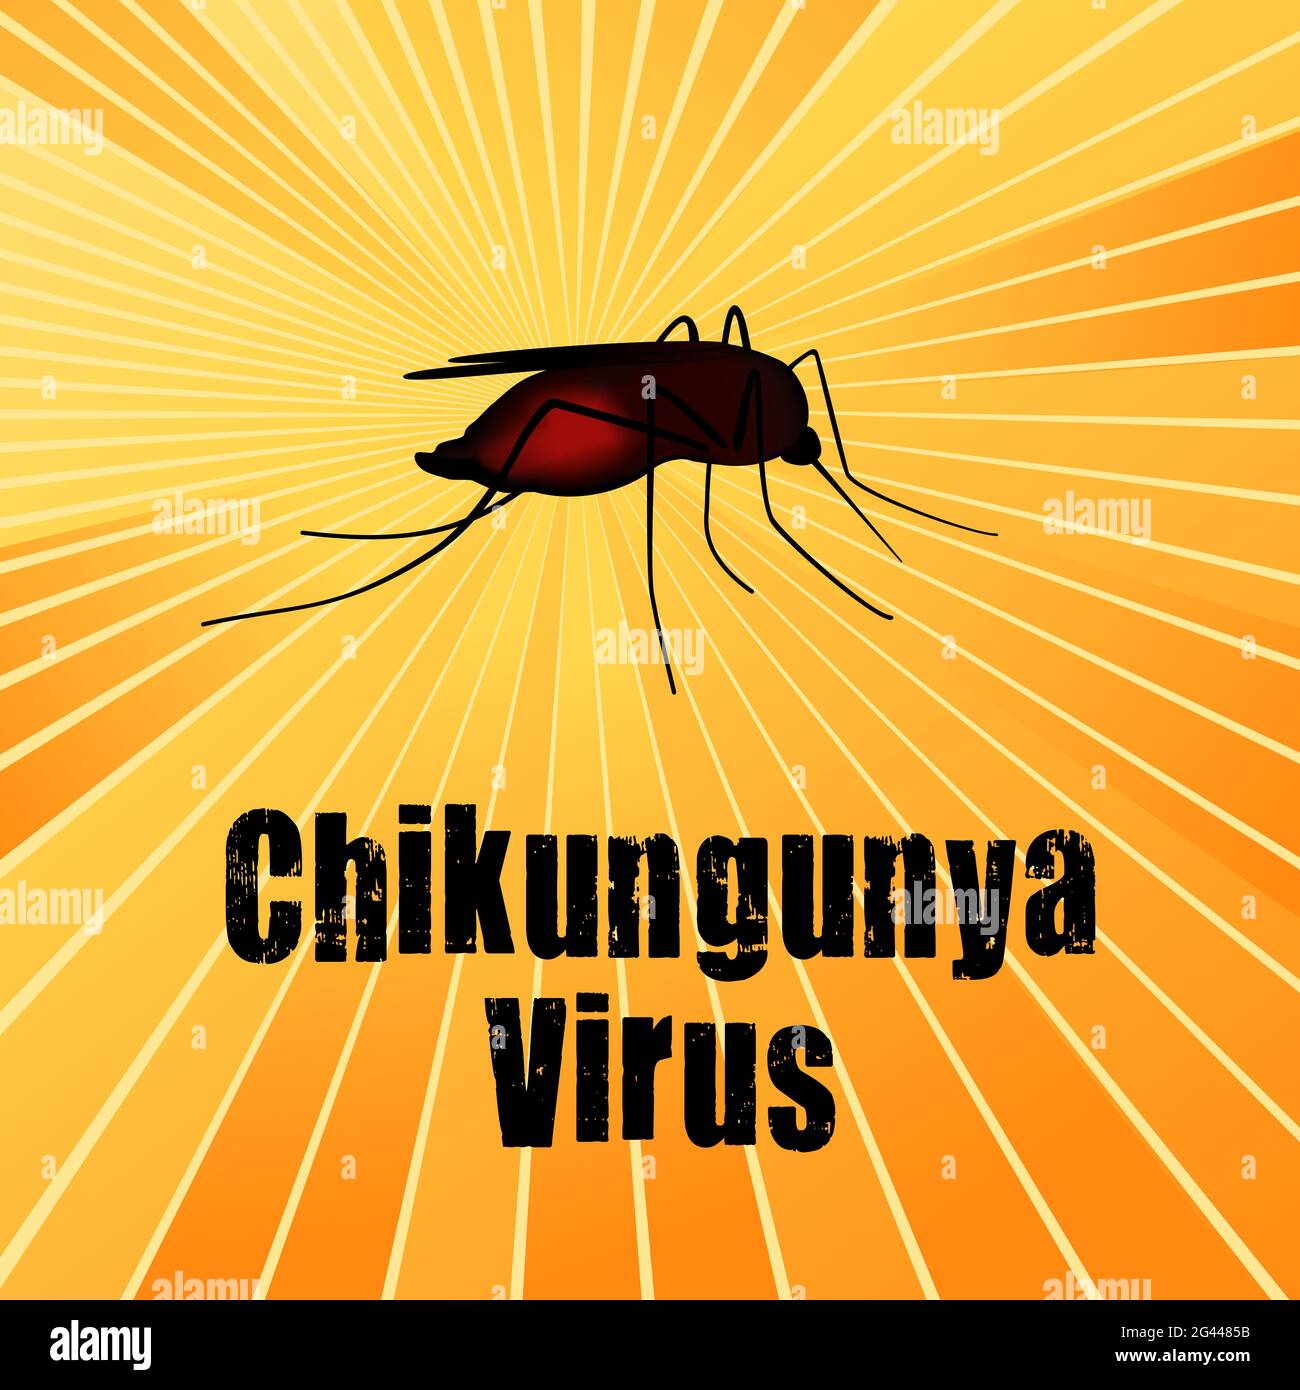 Virus Chikungunya, mosquito lleno de sangre, insecto mordedura, riesgo para la salud pública, vector de enfermedades infecciosas, fondo de rayos del sol Foto de stock